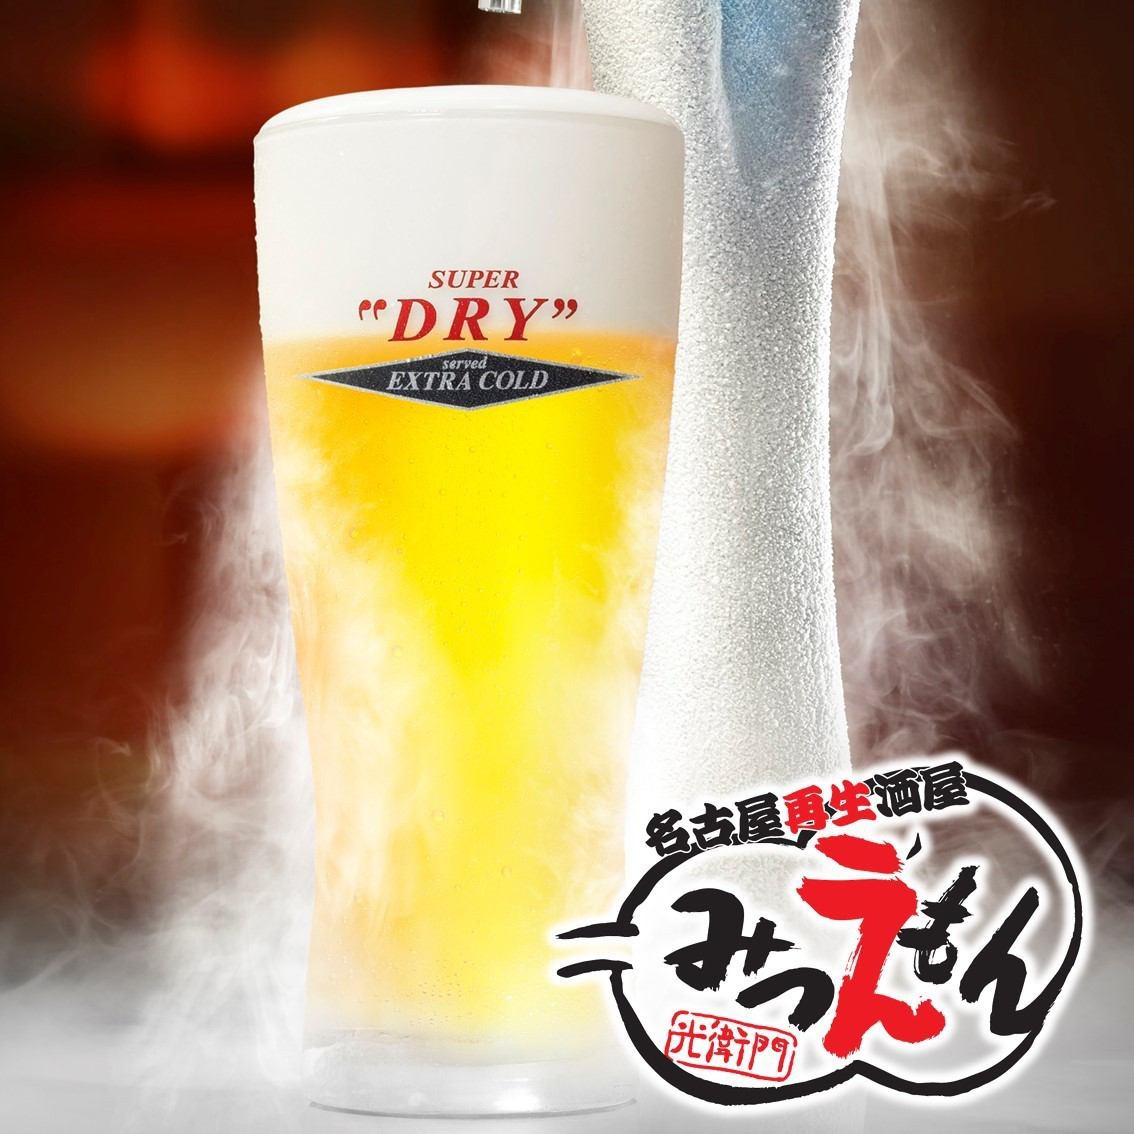 即使有很多杯子，超冷的Asahi Super Dry也很便宜！